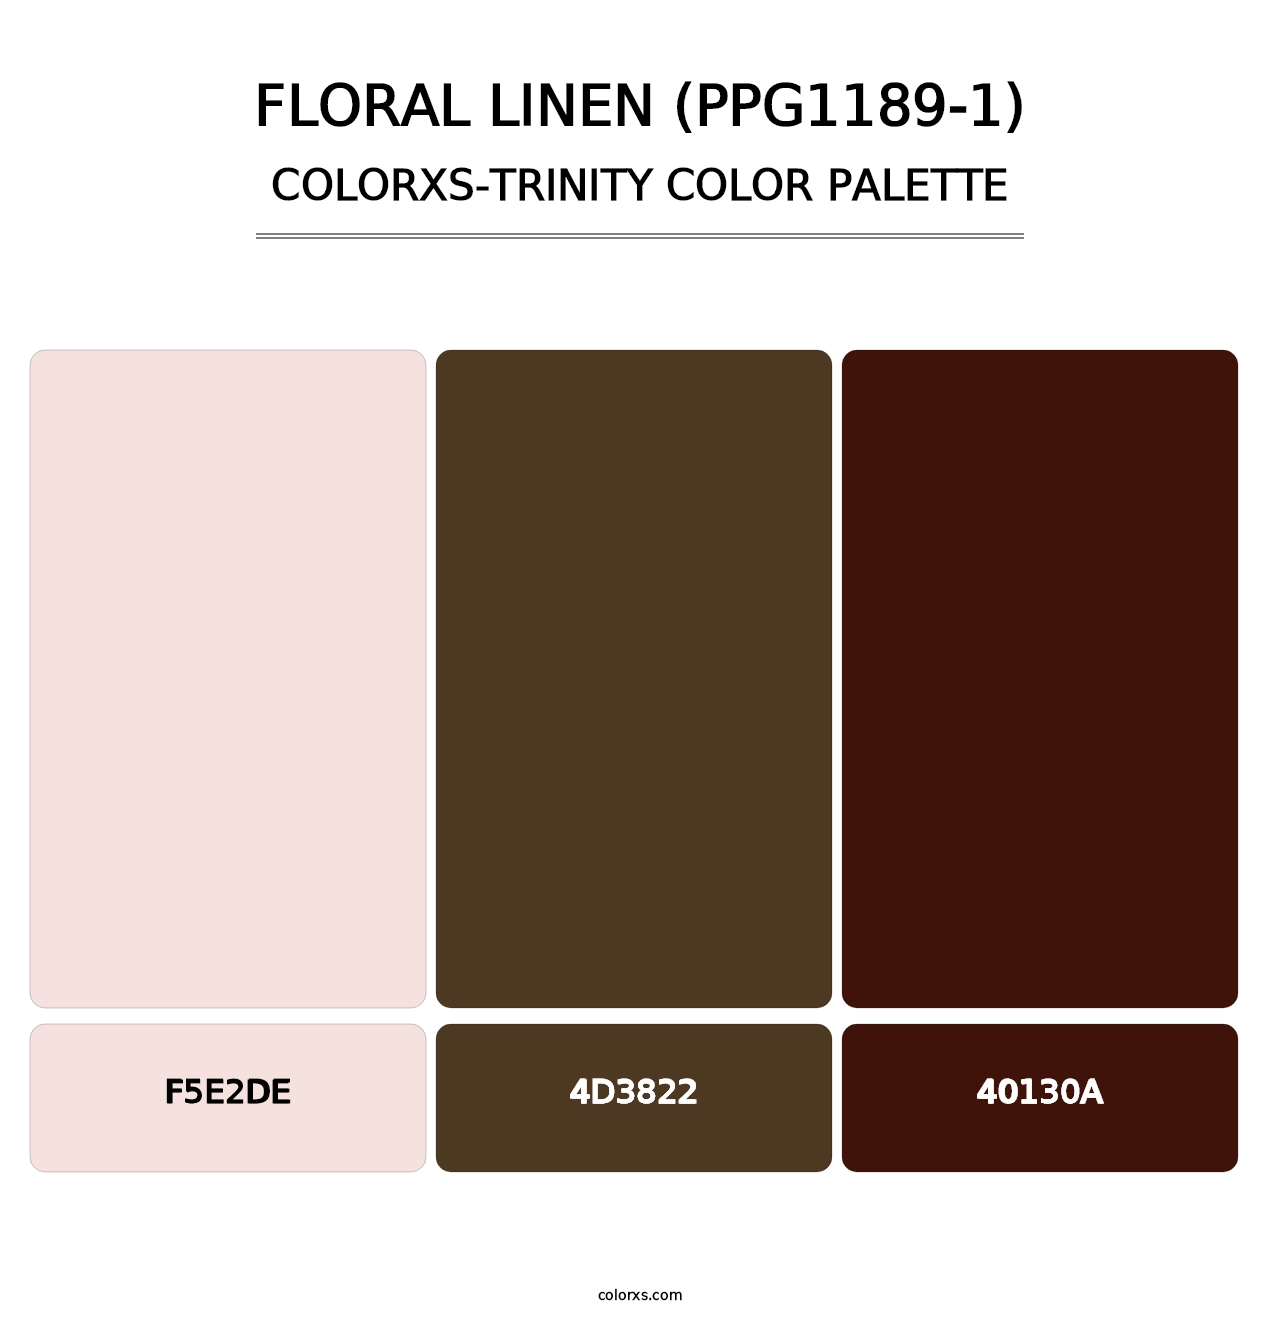 Floral Linen (PPG1189-1) - Colorxs Trinity Palette